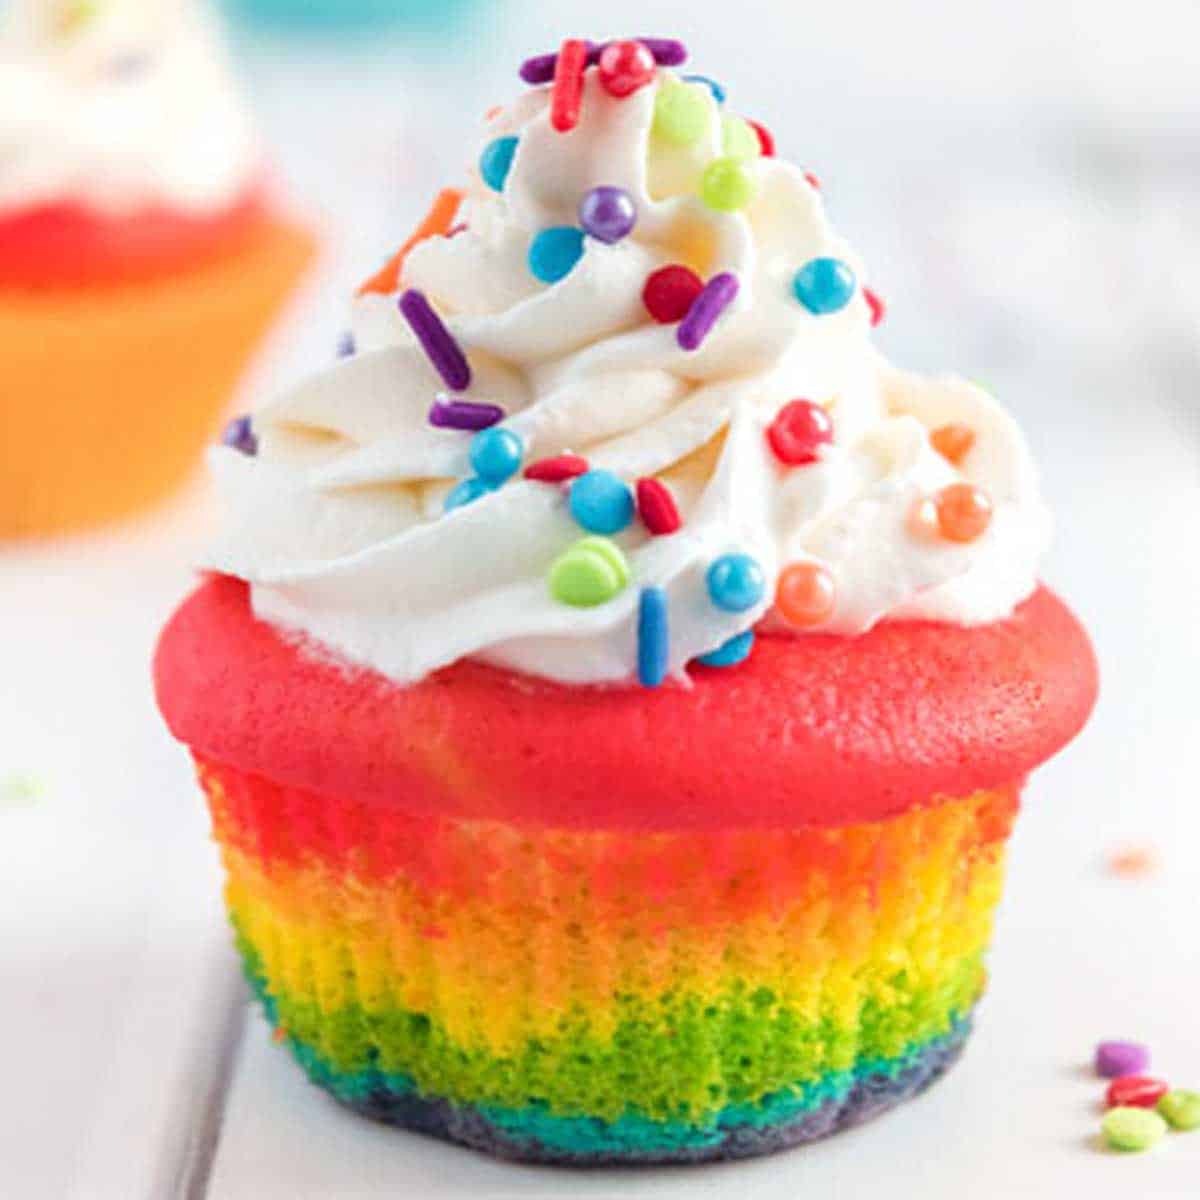 pretty colorful cupcake